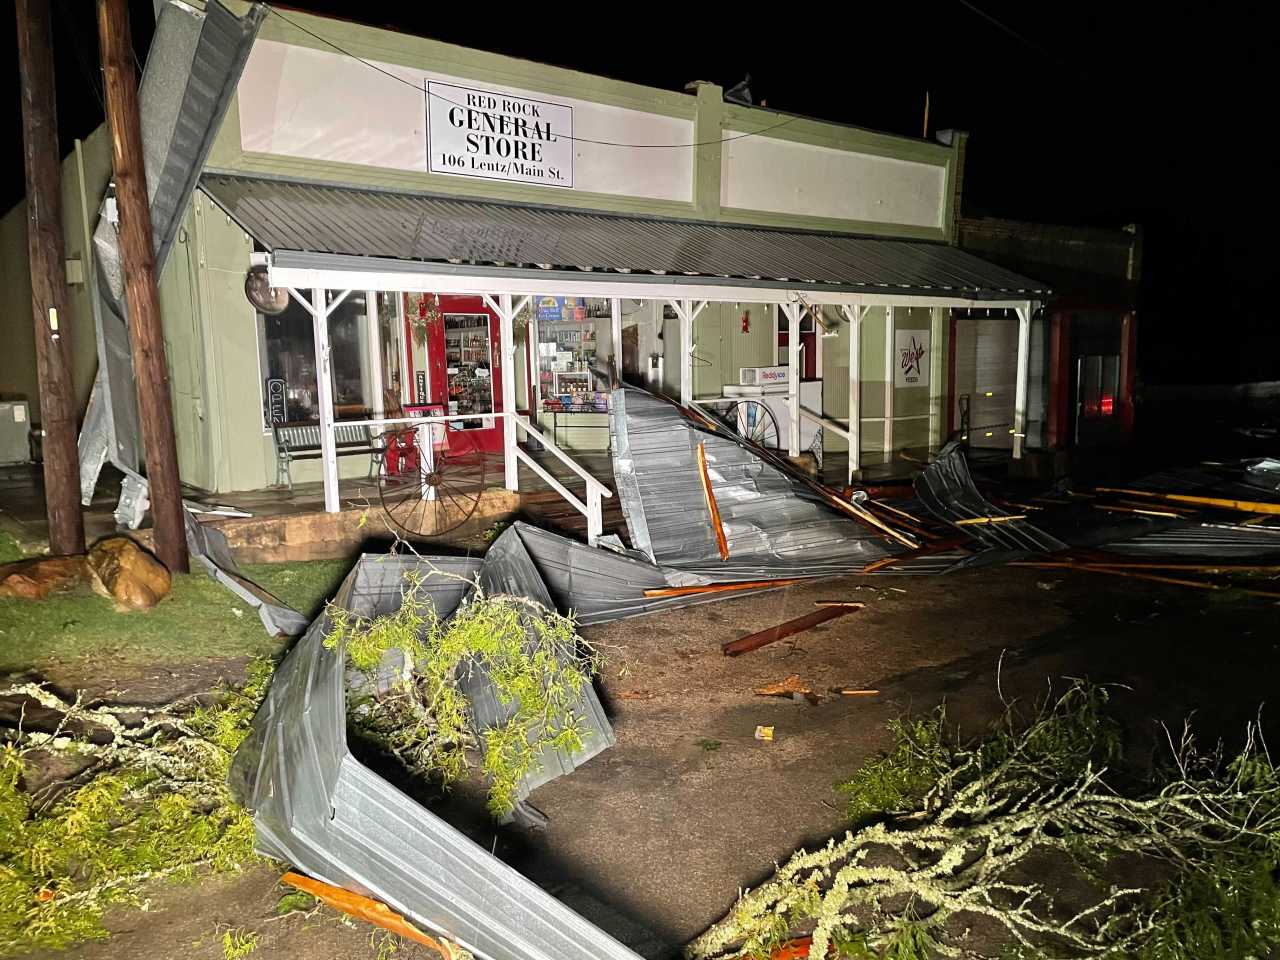 Bastrop County business rebuilds after severe storm damage ...